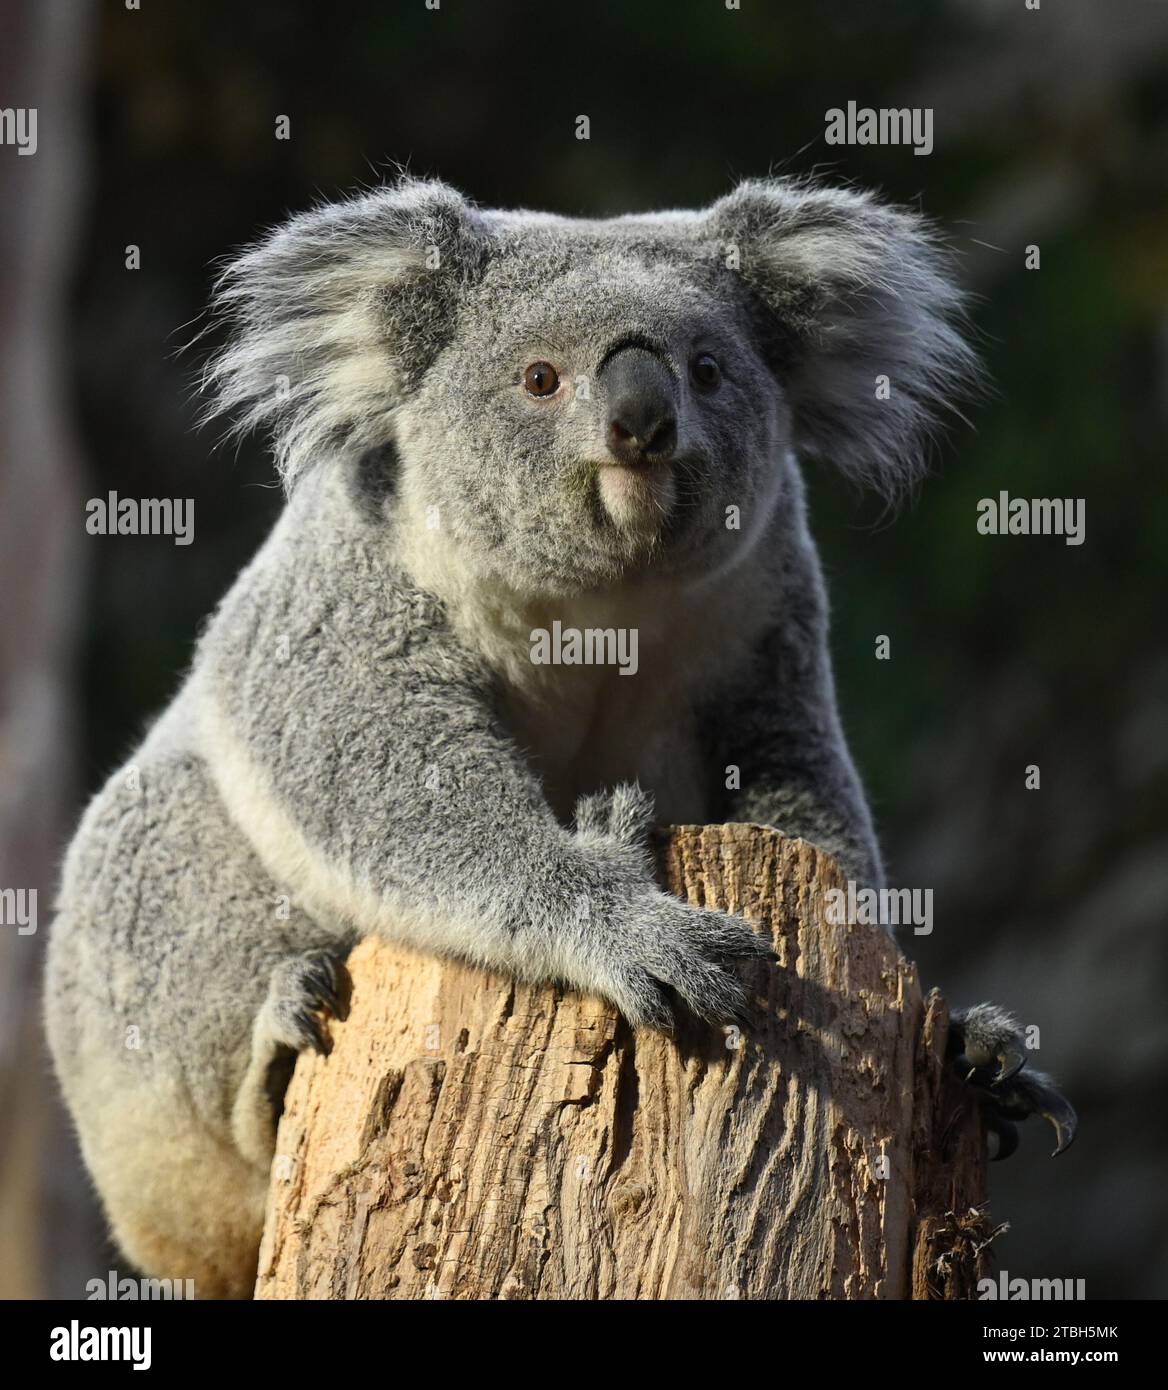 Leipzig, Deutschland. Dezember 2023. Die weibliche Koala Erlinga sitzt auf einem Baumstamm. Ende November kam die zweijährige Koala aus dem Duisburger Zoo auf Empfehlung des European Endangered Species Program (EEP) nach Leipzig. Ziel ist es, die Züchtung dieser gefährdeten Art zu unterstützen. Quelle: Patricia Bartos/dpa/Alamy Live News Stockfoto